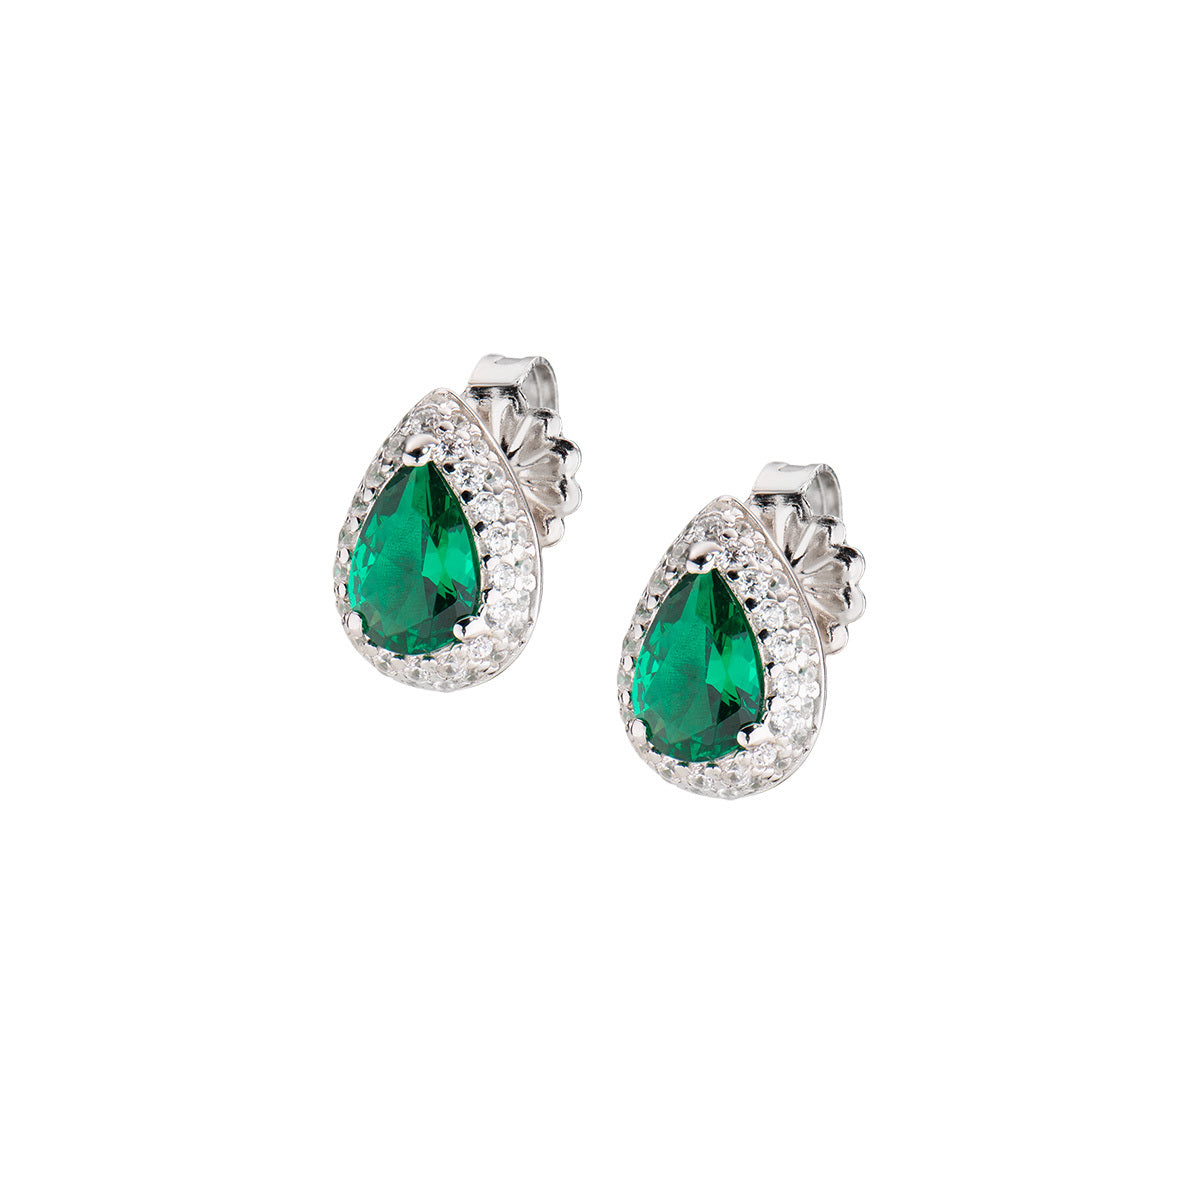 Orecchini Gioielli Amen con pietra verde smeraldo e zirconi - EGOBVBZ